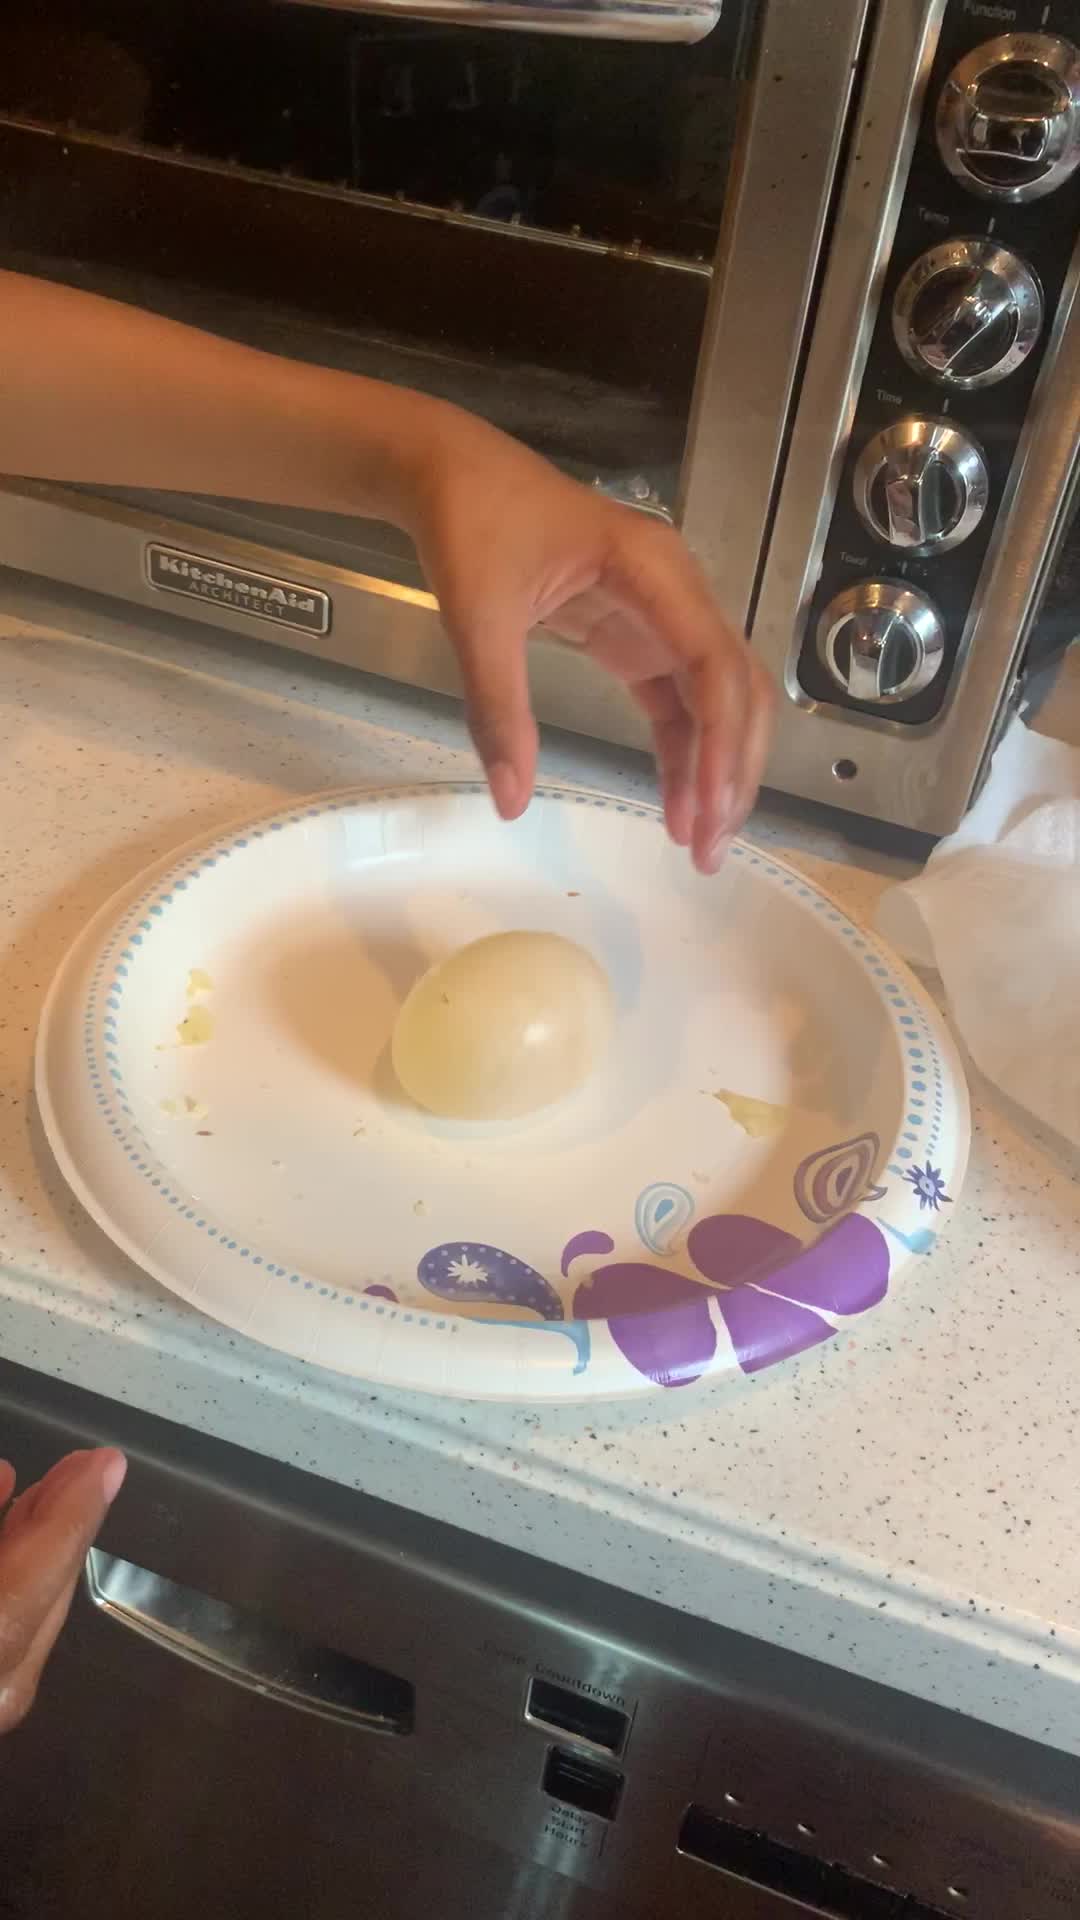 Egg drop experiment